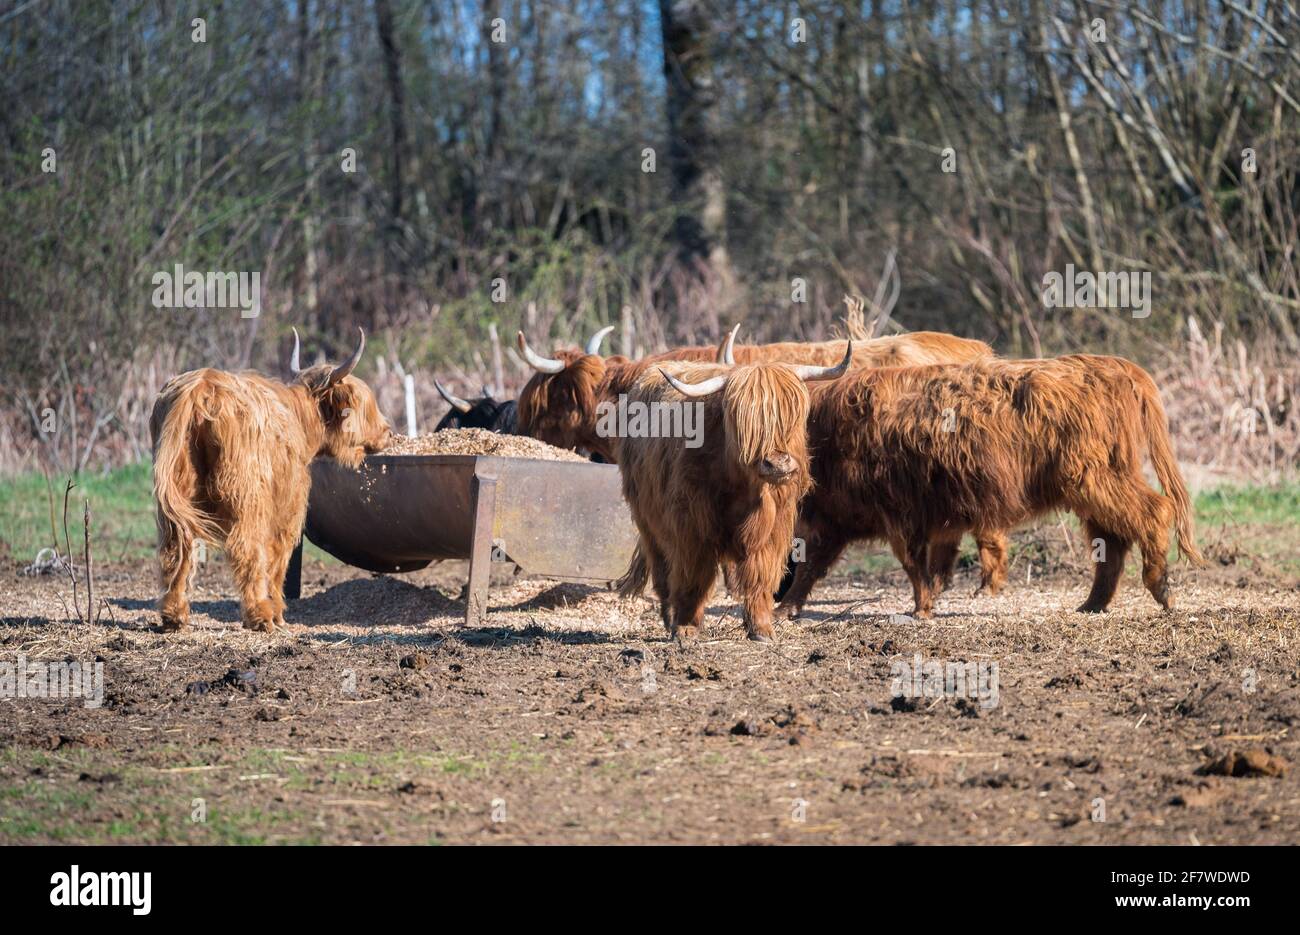 Scottish highland cattle. Animals near their feeder. Stock Photo